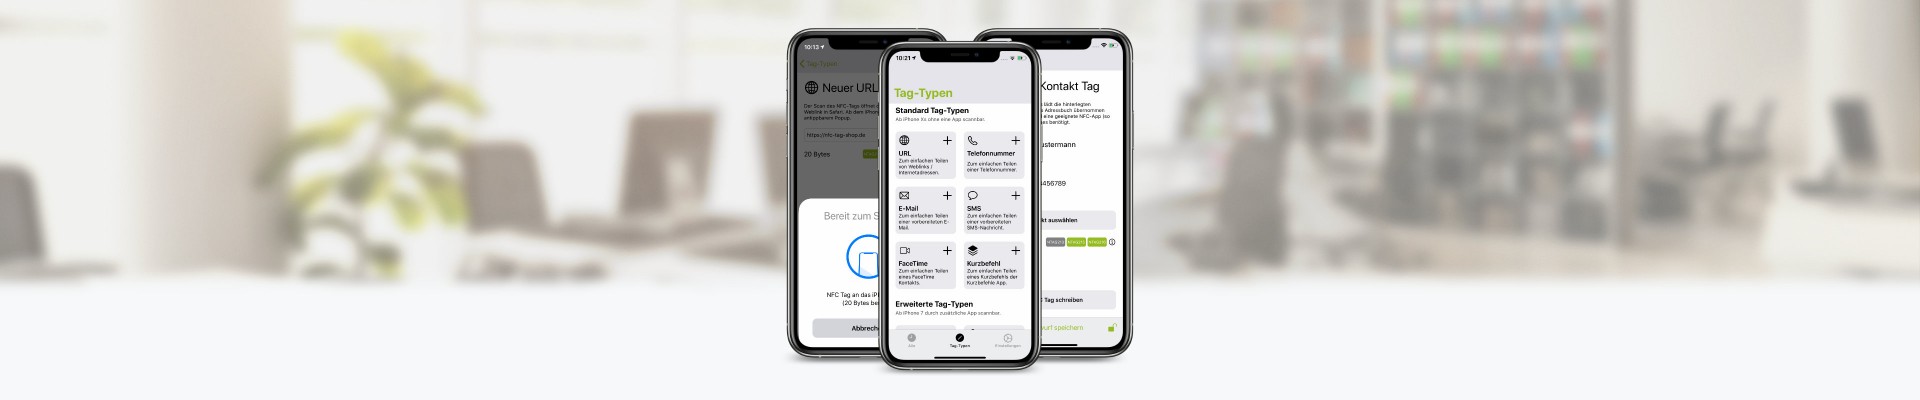 NFC21 Tools für iOS – Werkzeug zum beschreiben und Lesen von NFC-Tags